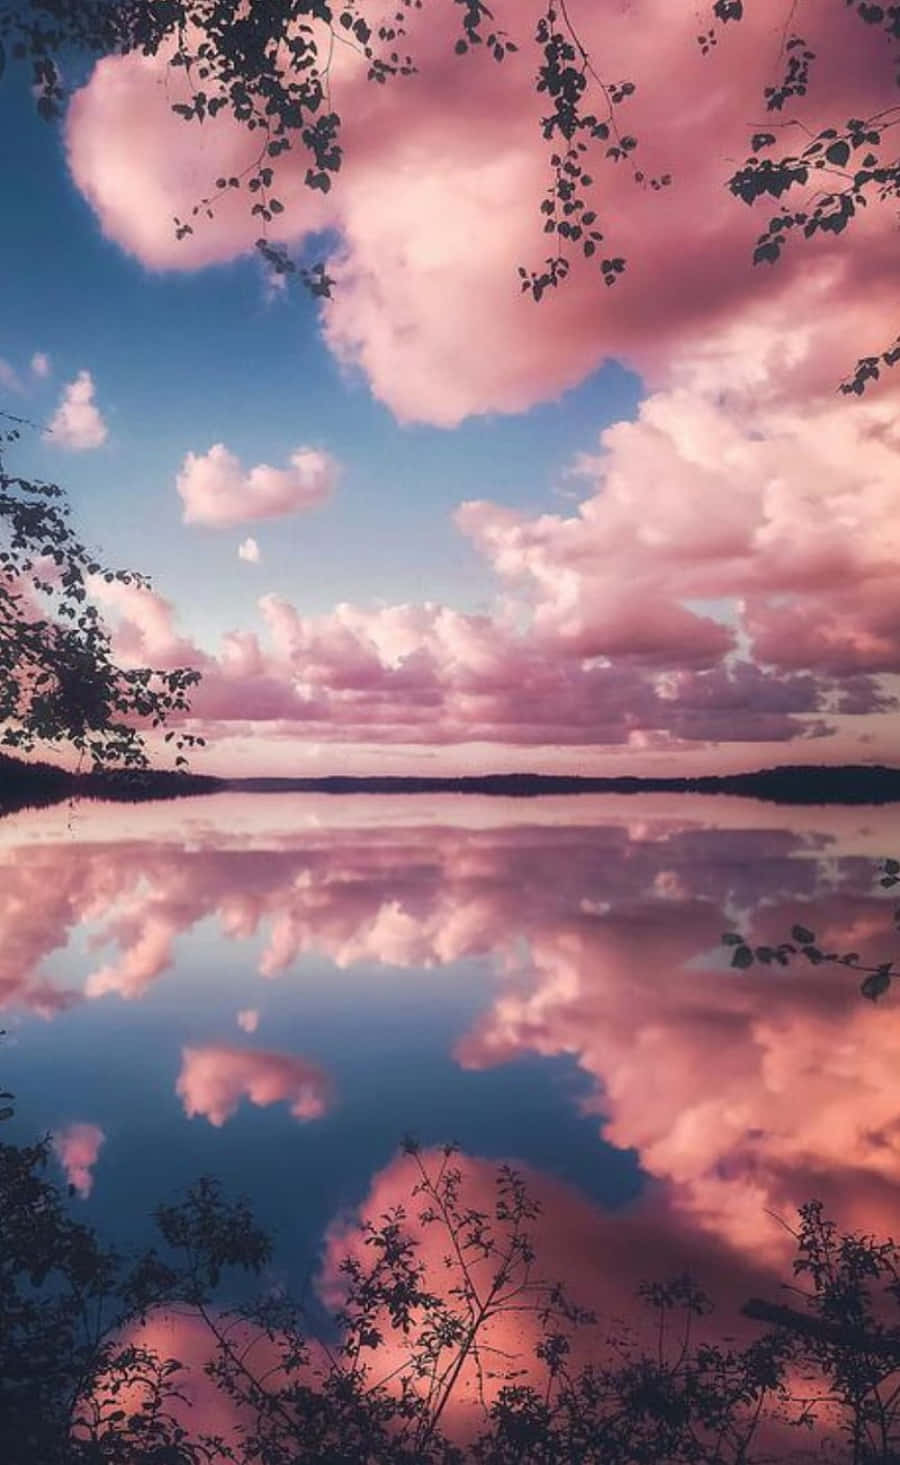 Imagensde Céu Com Nuvens Cor De Rosa.